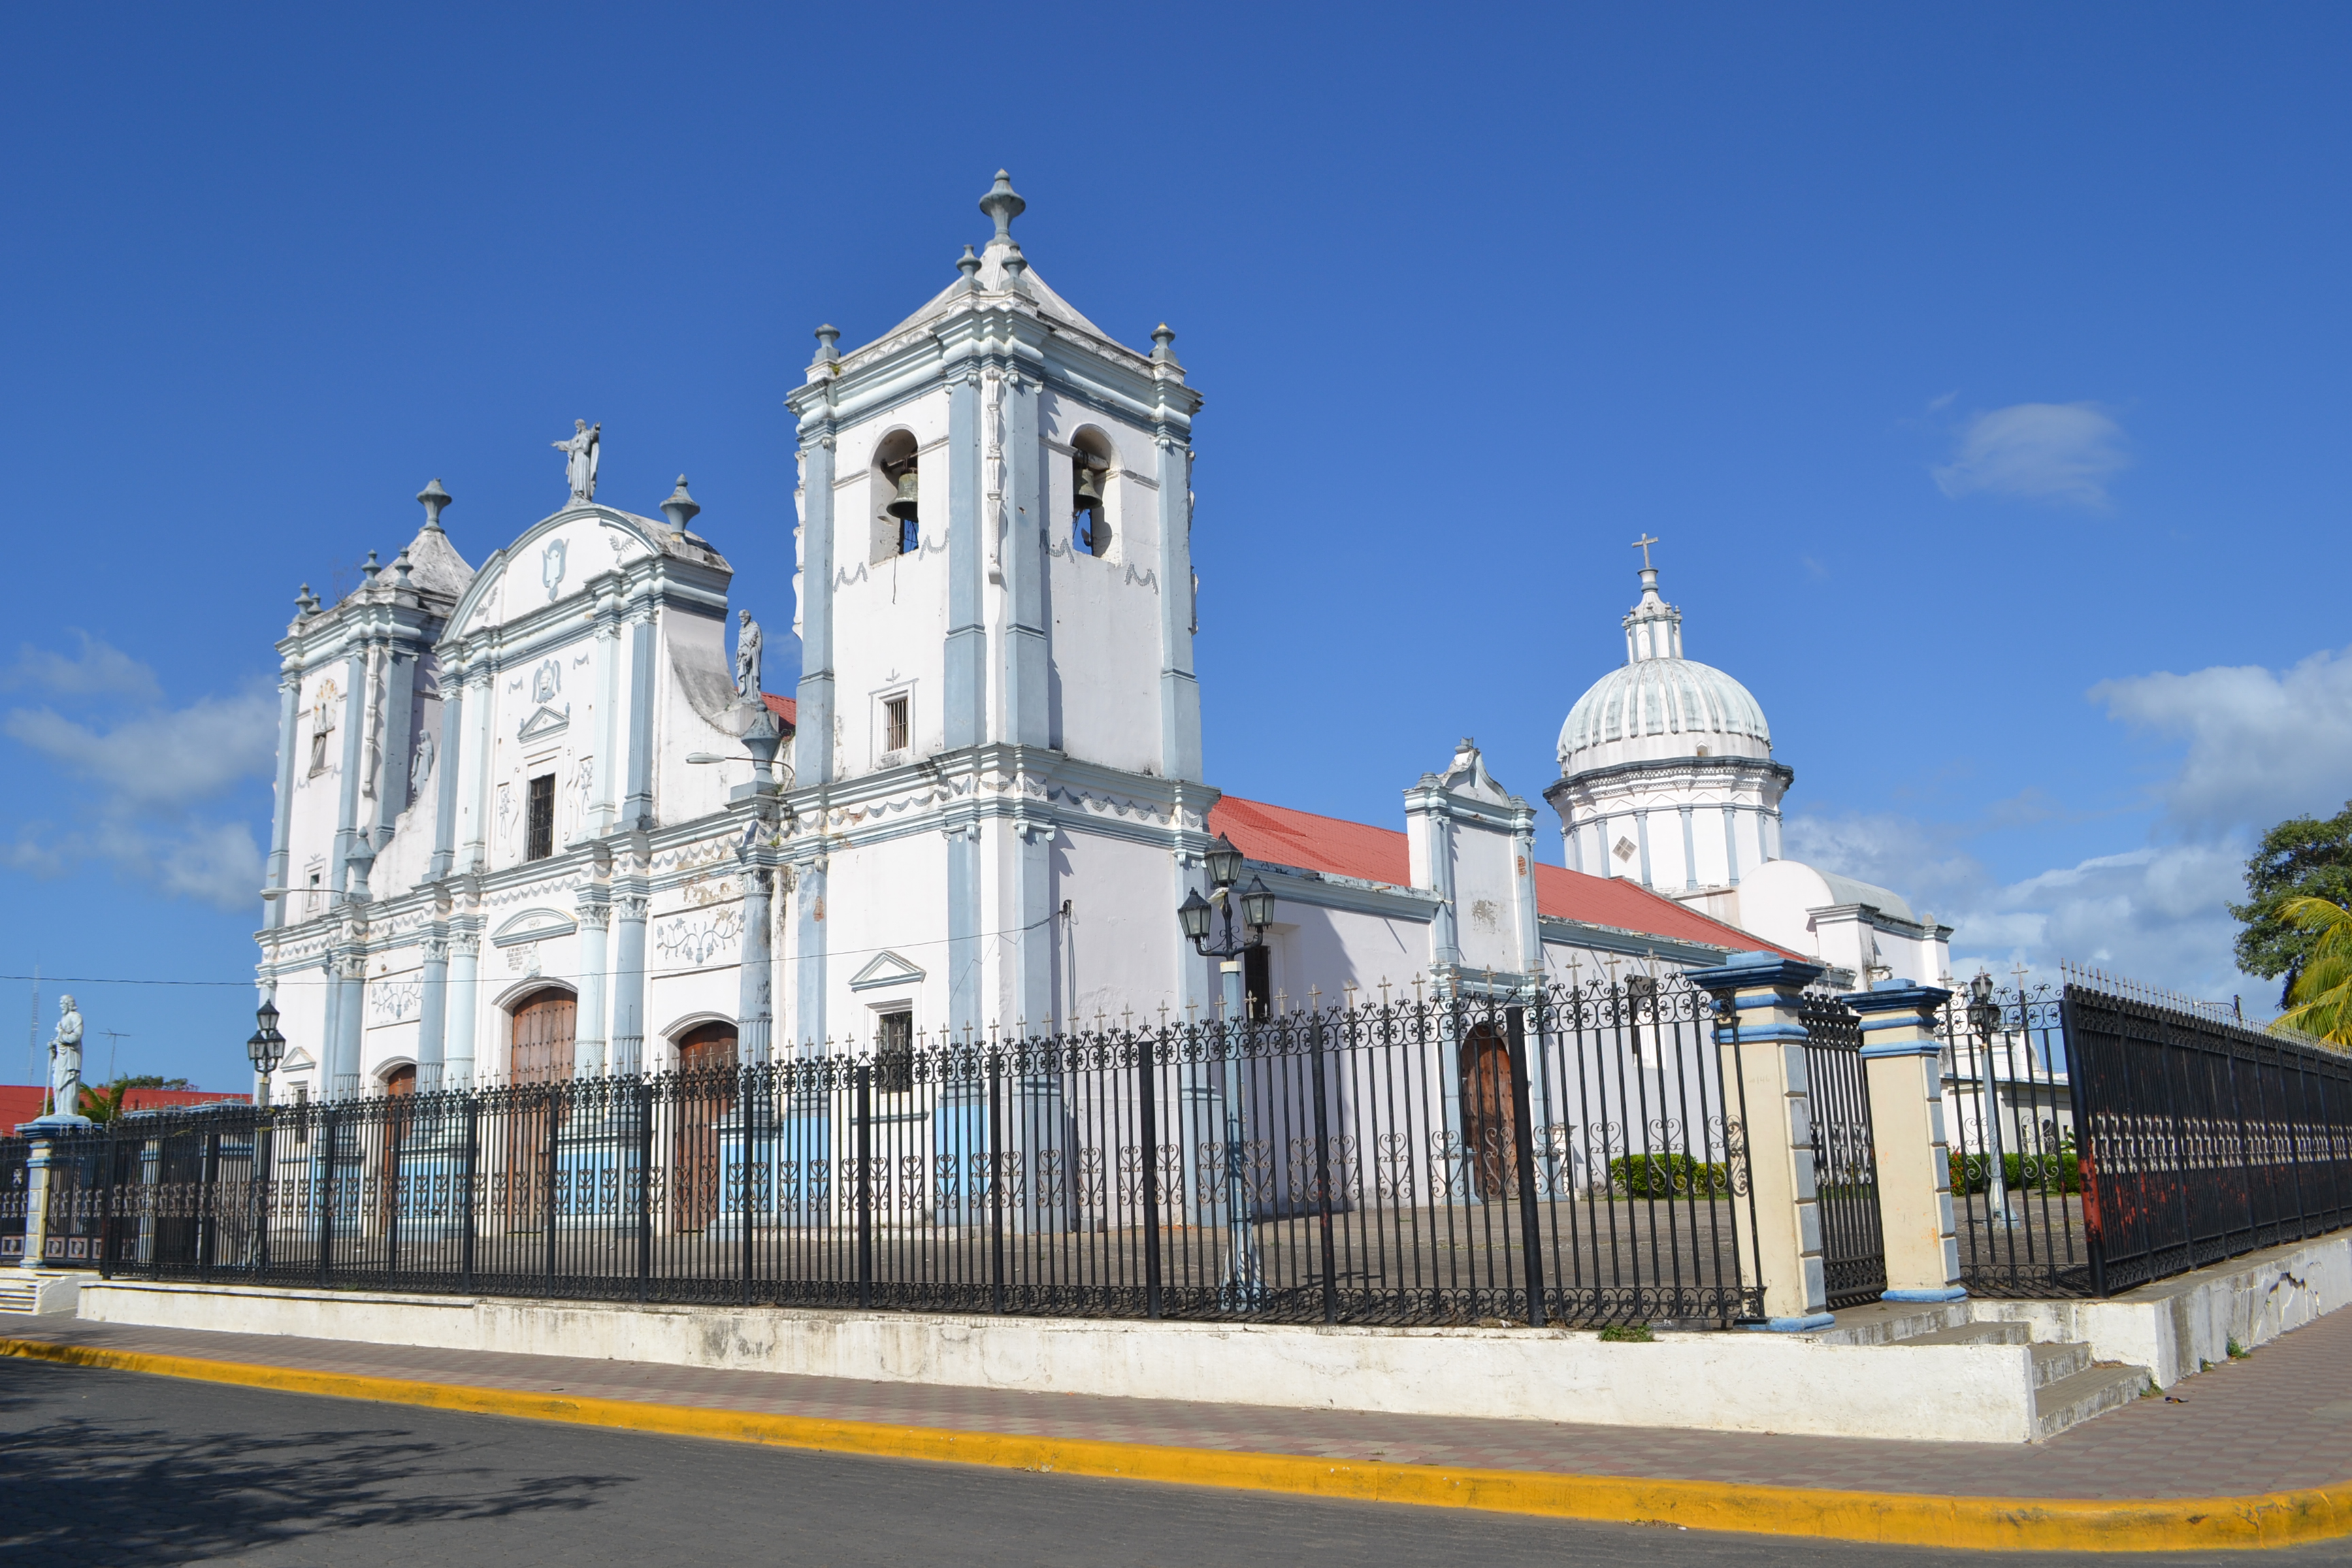 Foto: Iglesia de Rivas - Rivas, Nicaragua